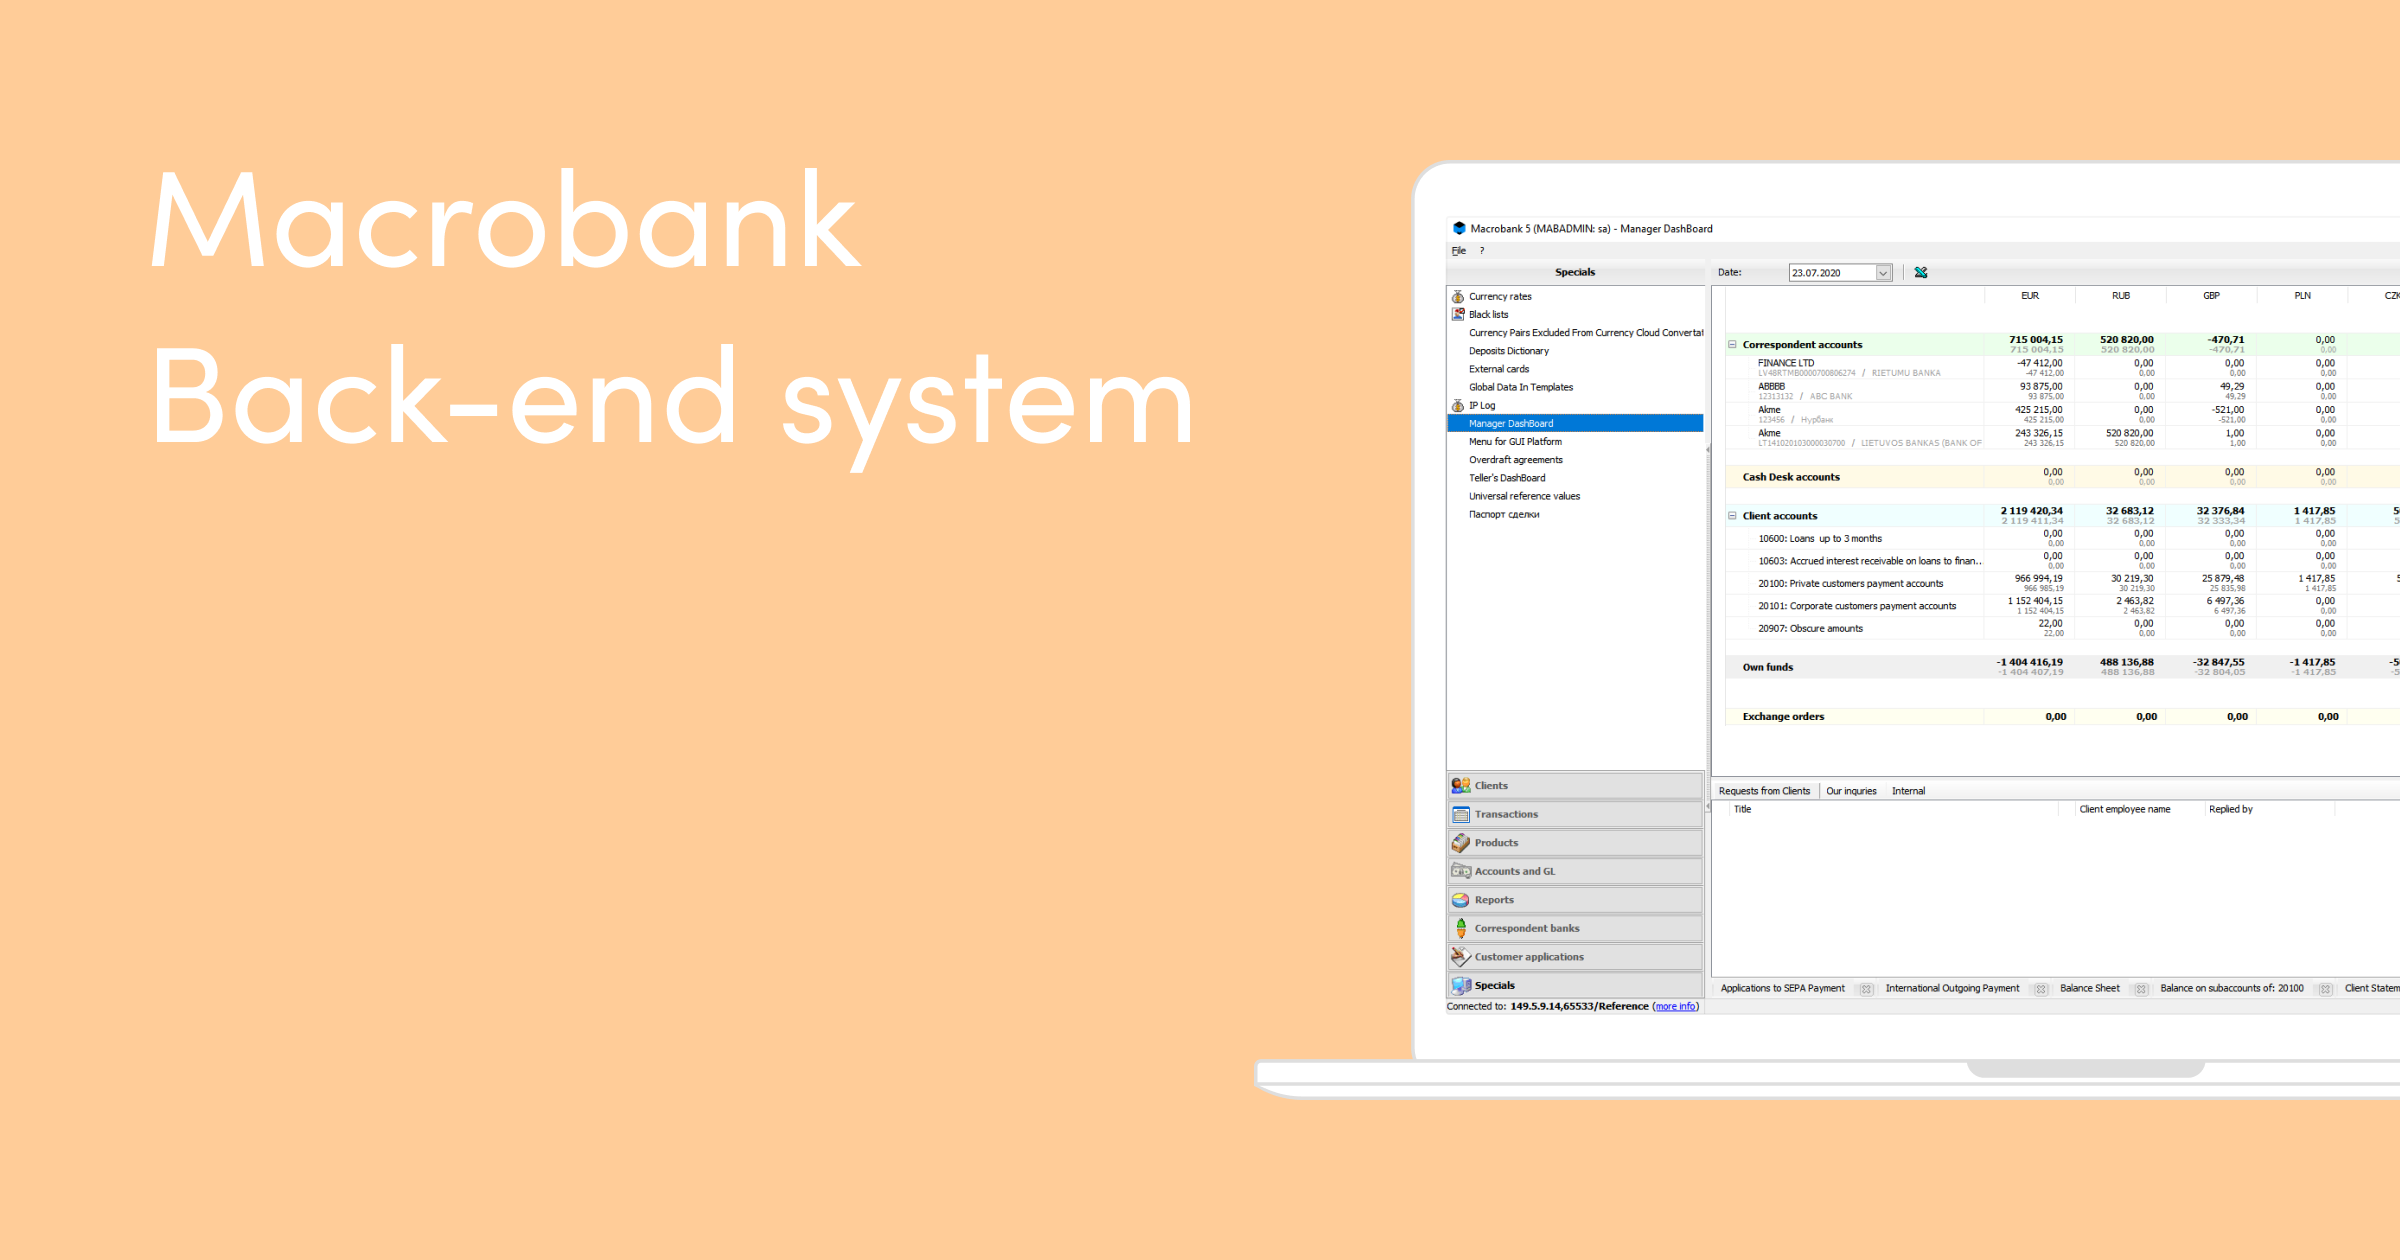 Macrobank Back-end system